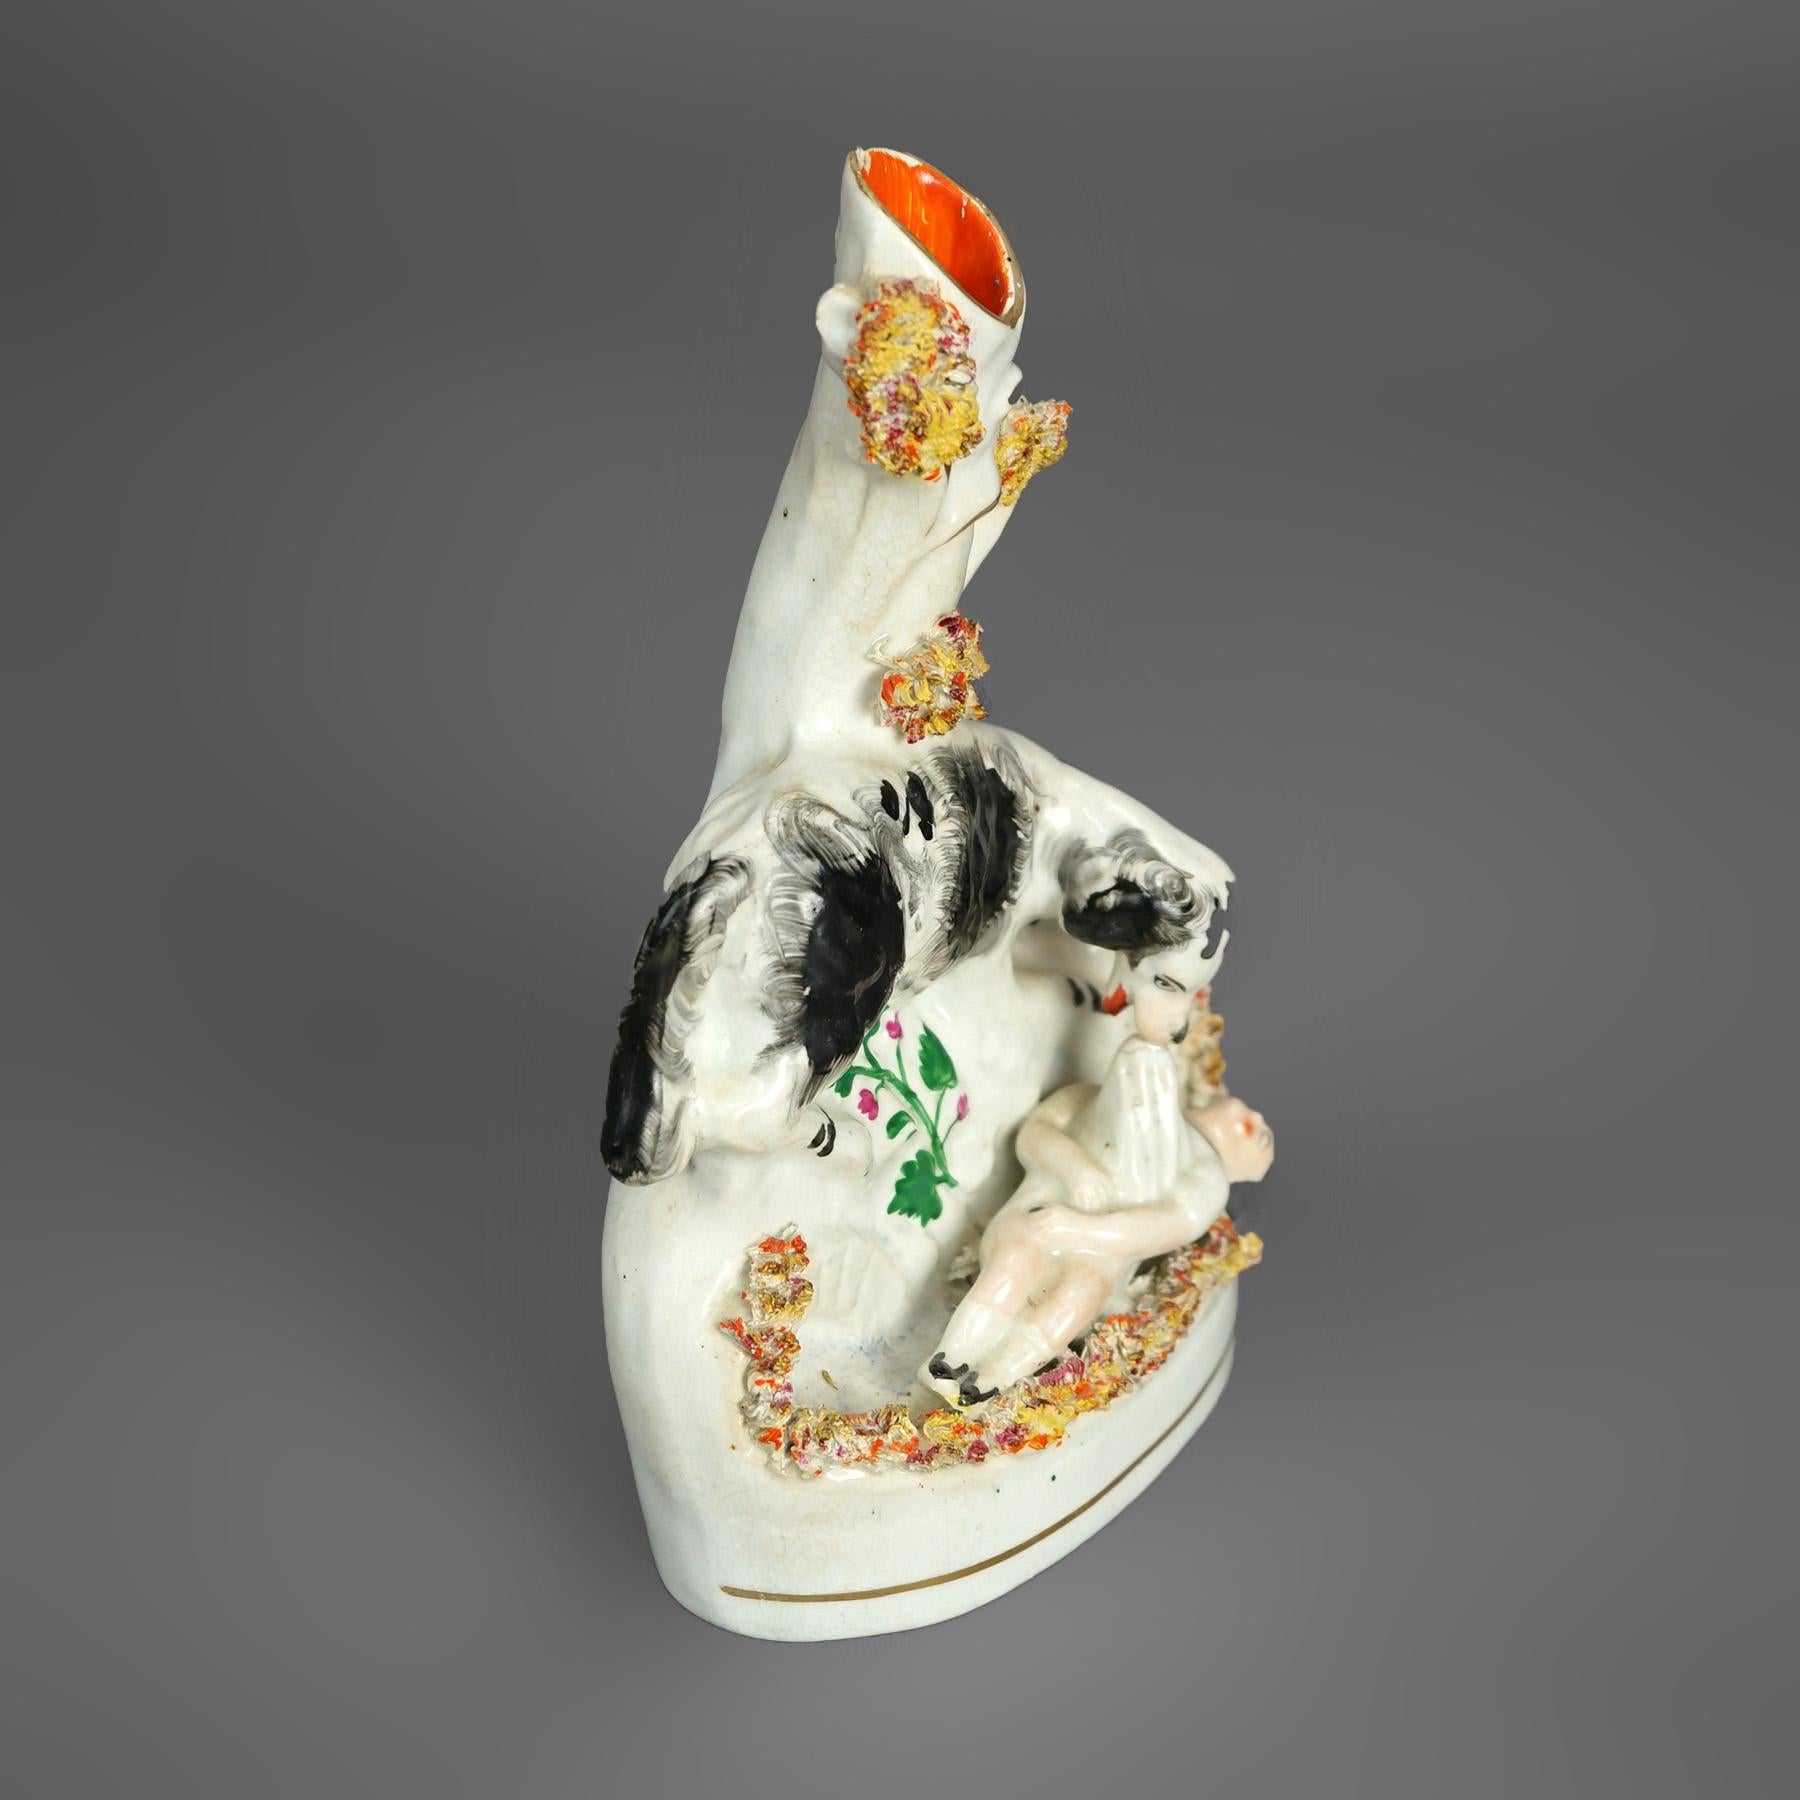 Paire de vases à déversement anciens en porcelaine avec des figures peintes à la main et dorées d'un enfant enjoué et d'un Terre-Neuve (chien) dans un décor extérieur, vers 1870

Mesures - droite : 8''H x 5.25''W x 2.5''D ; gauche : 3''H x 5.25''W x